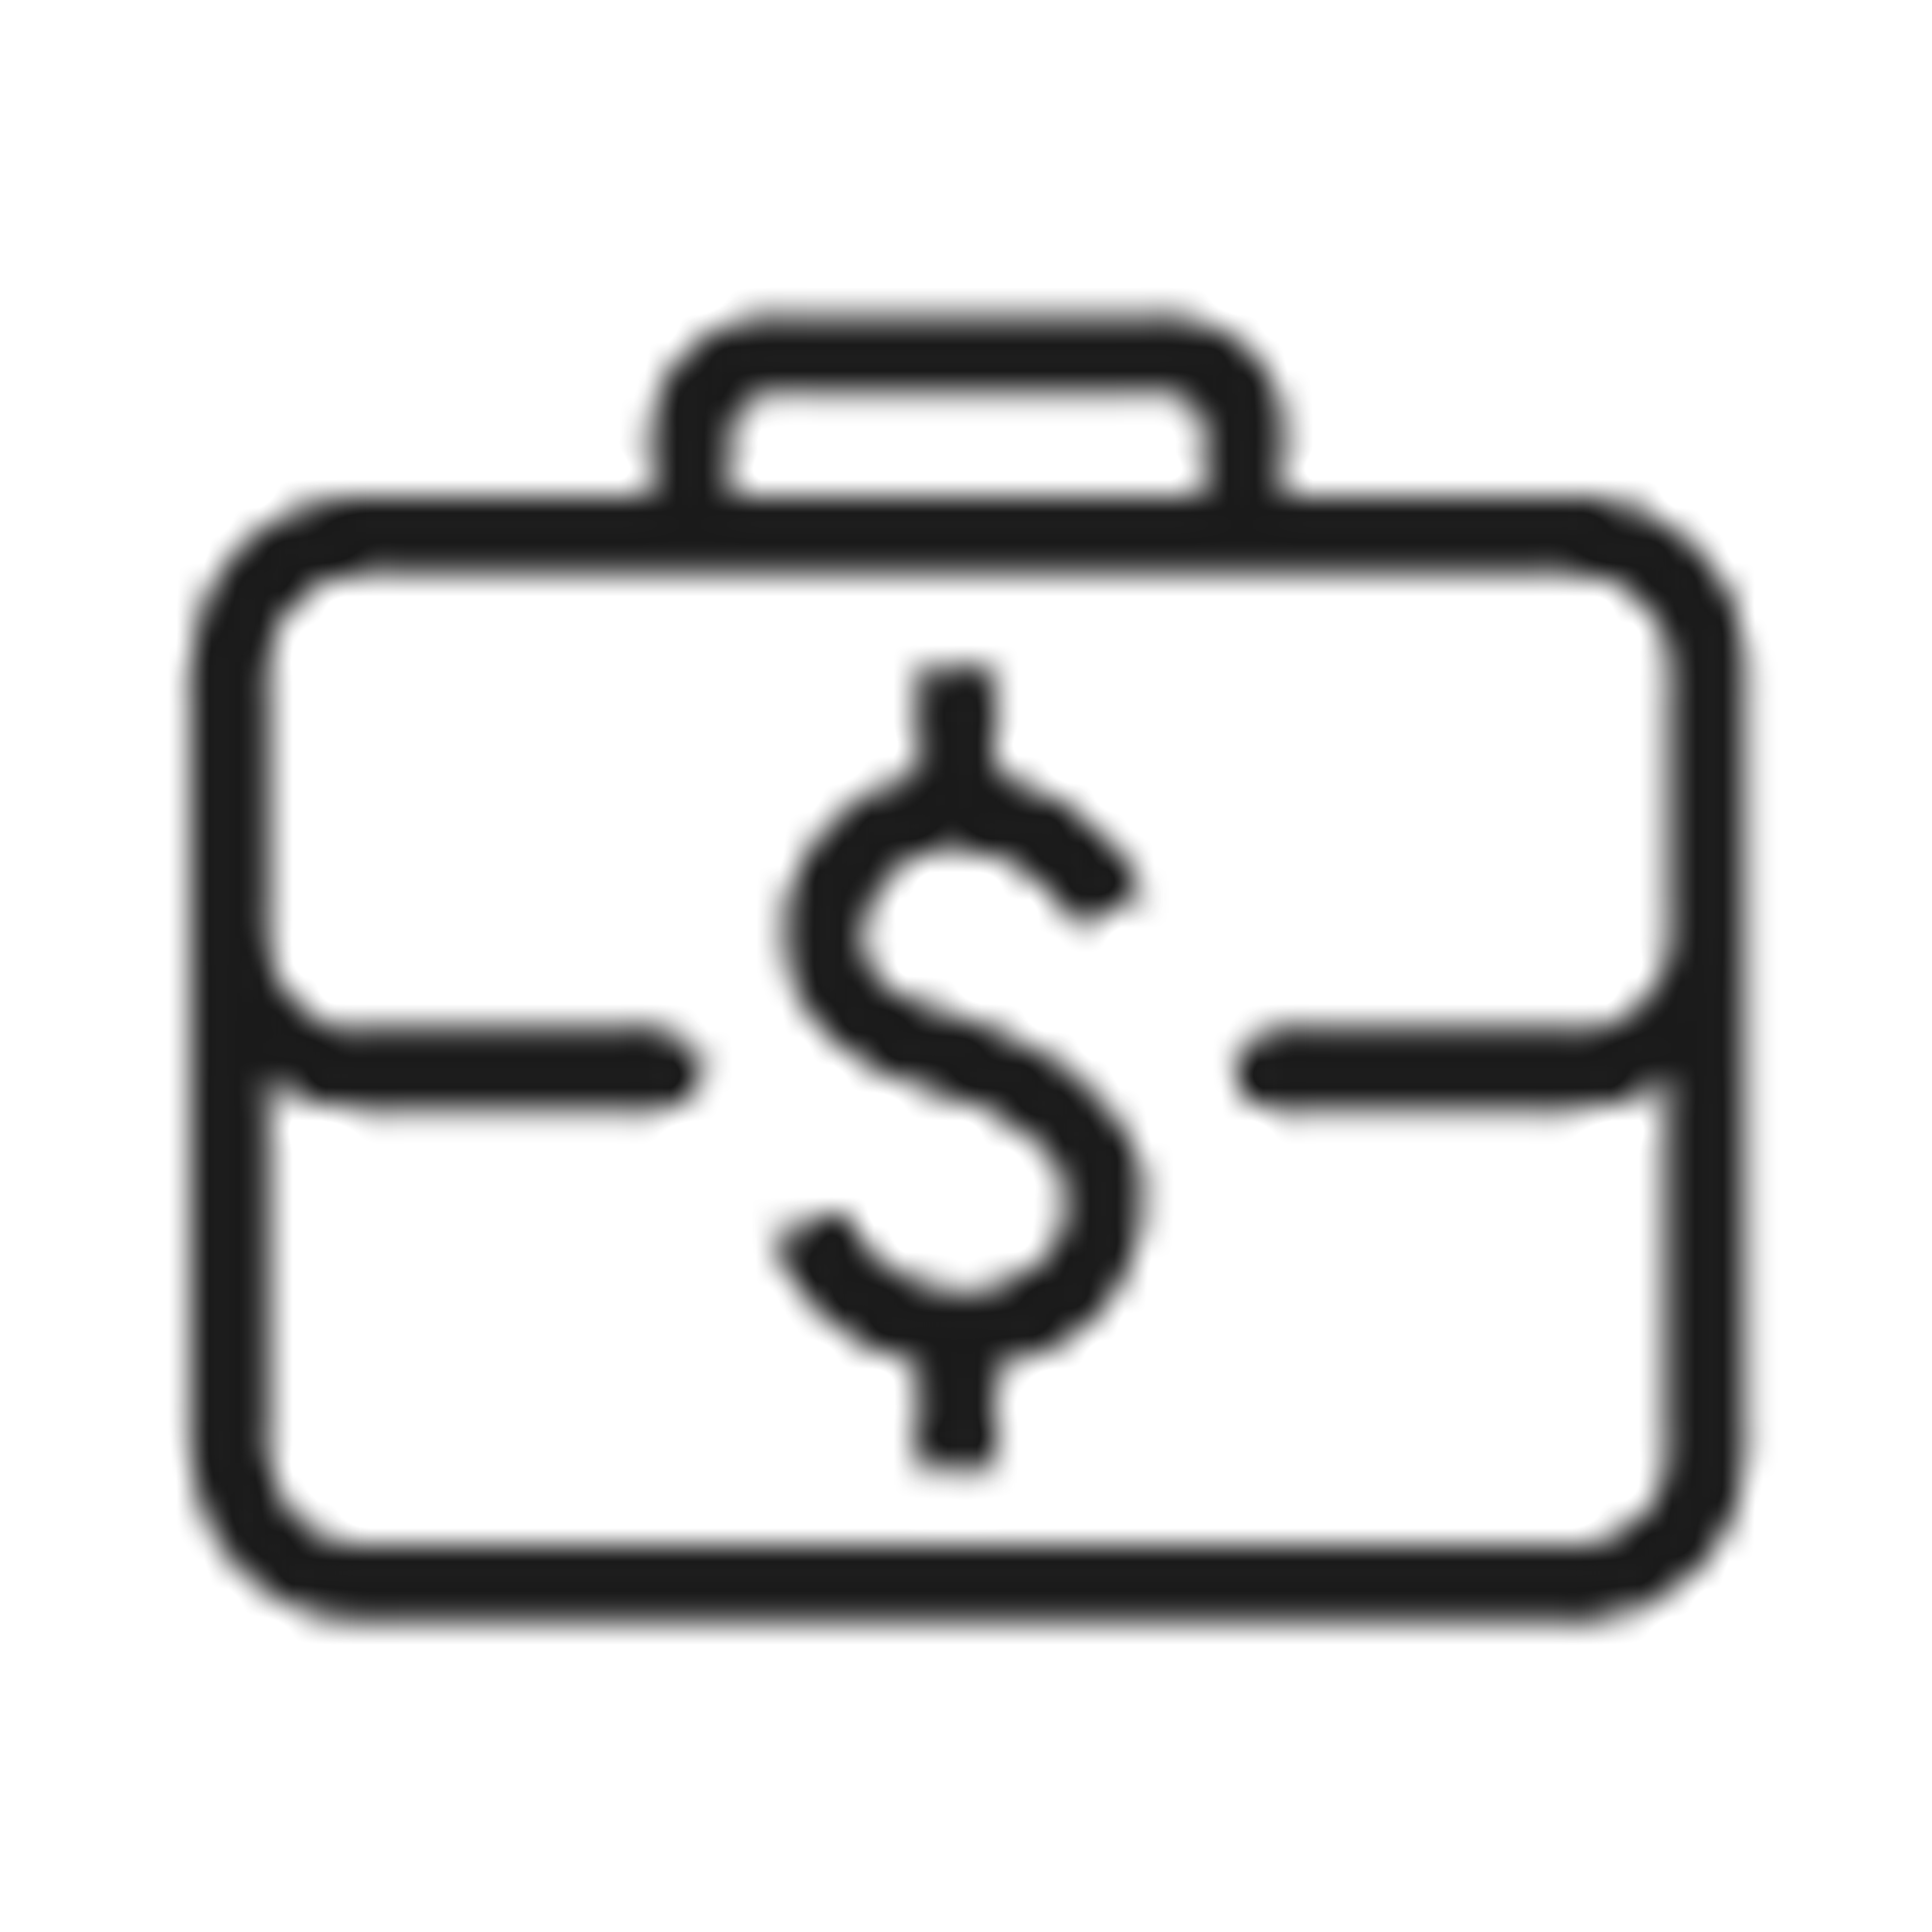 Briefcase with money symbol icon